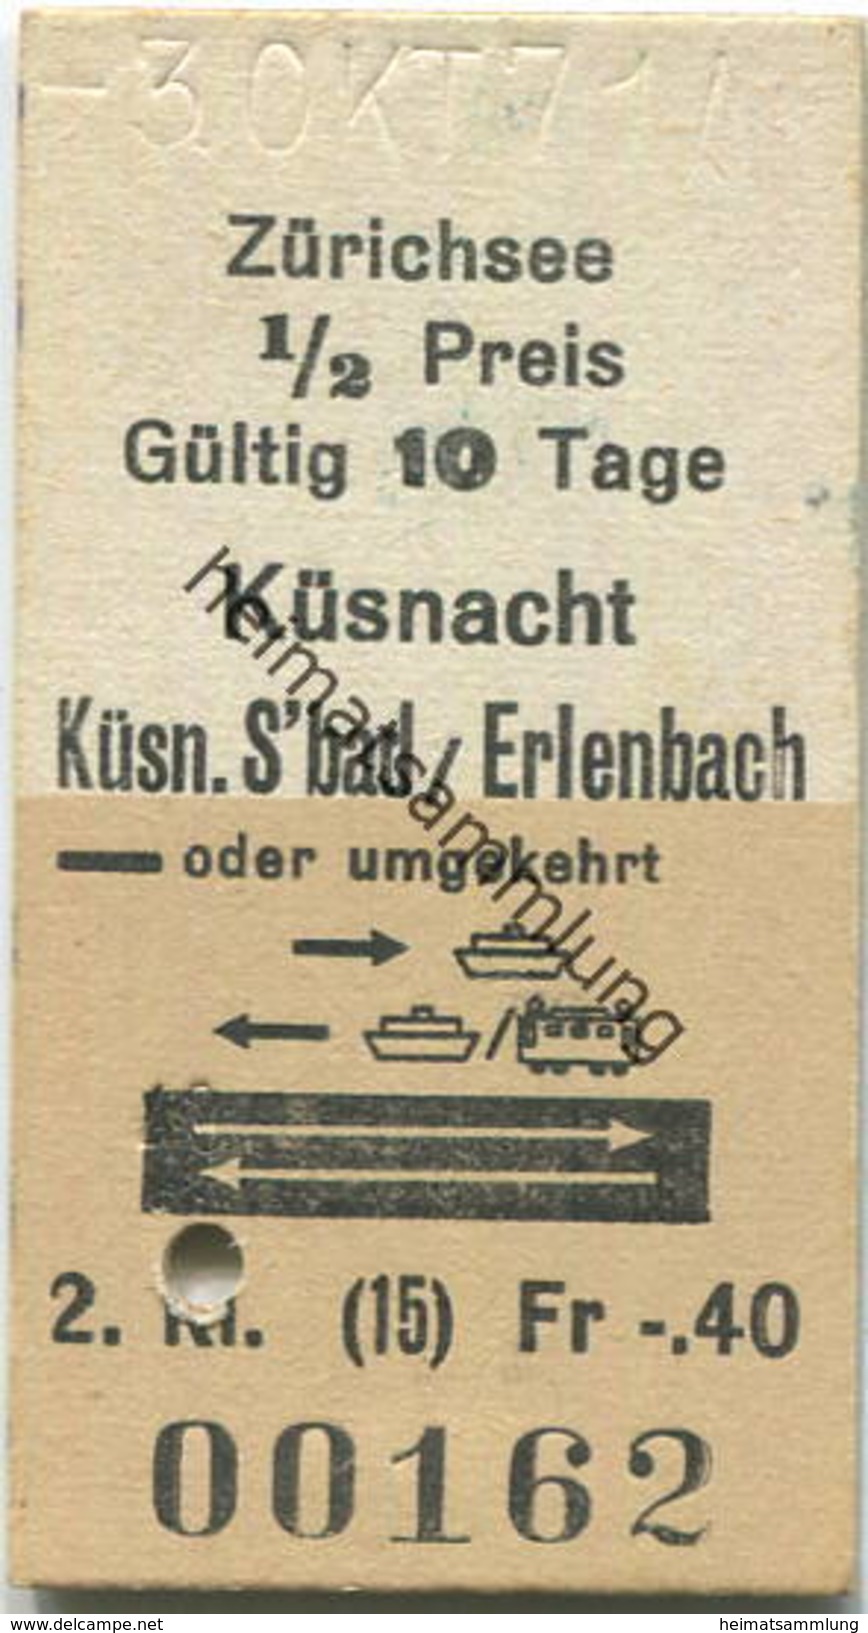 Schweiz - Zürichsee - Küsnacht - Küsn.S'bad / Erlenbach Oder Umgekehrt - Fahrkarte 1971 - Europe